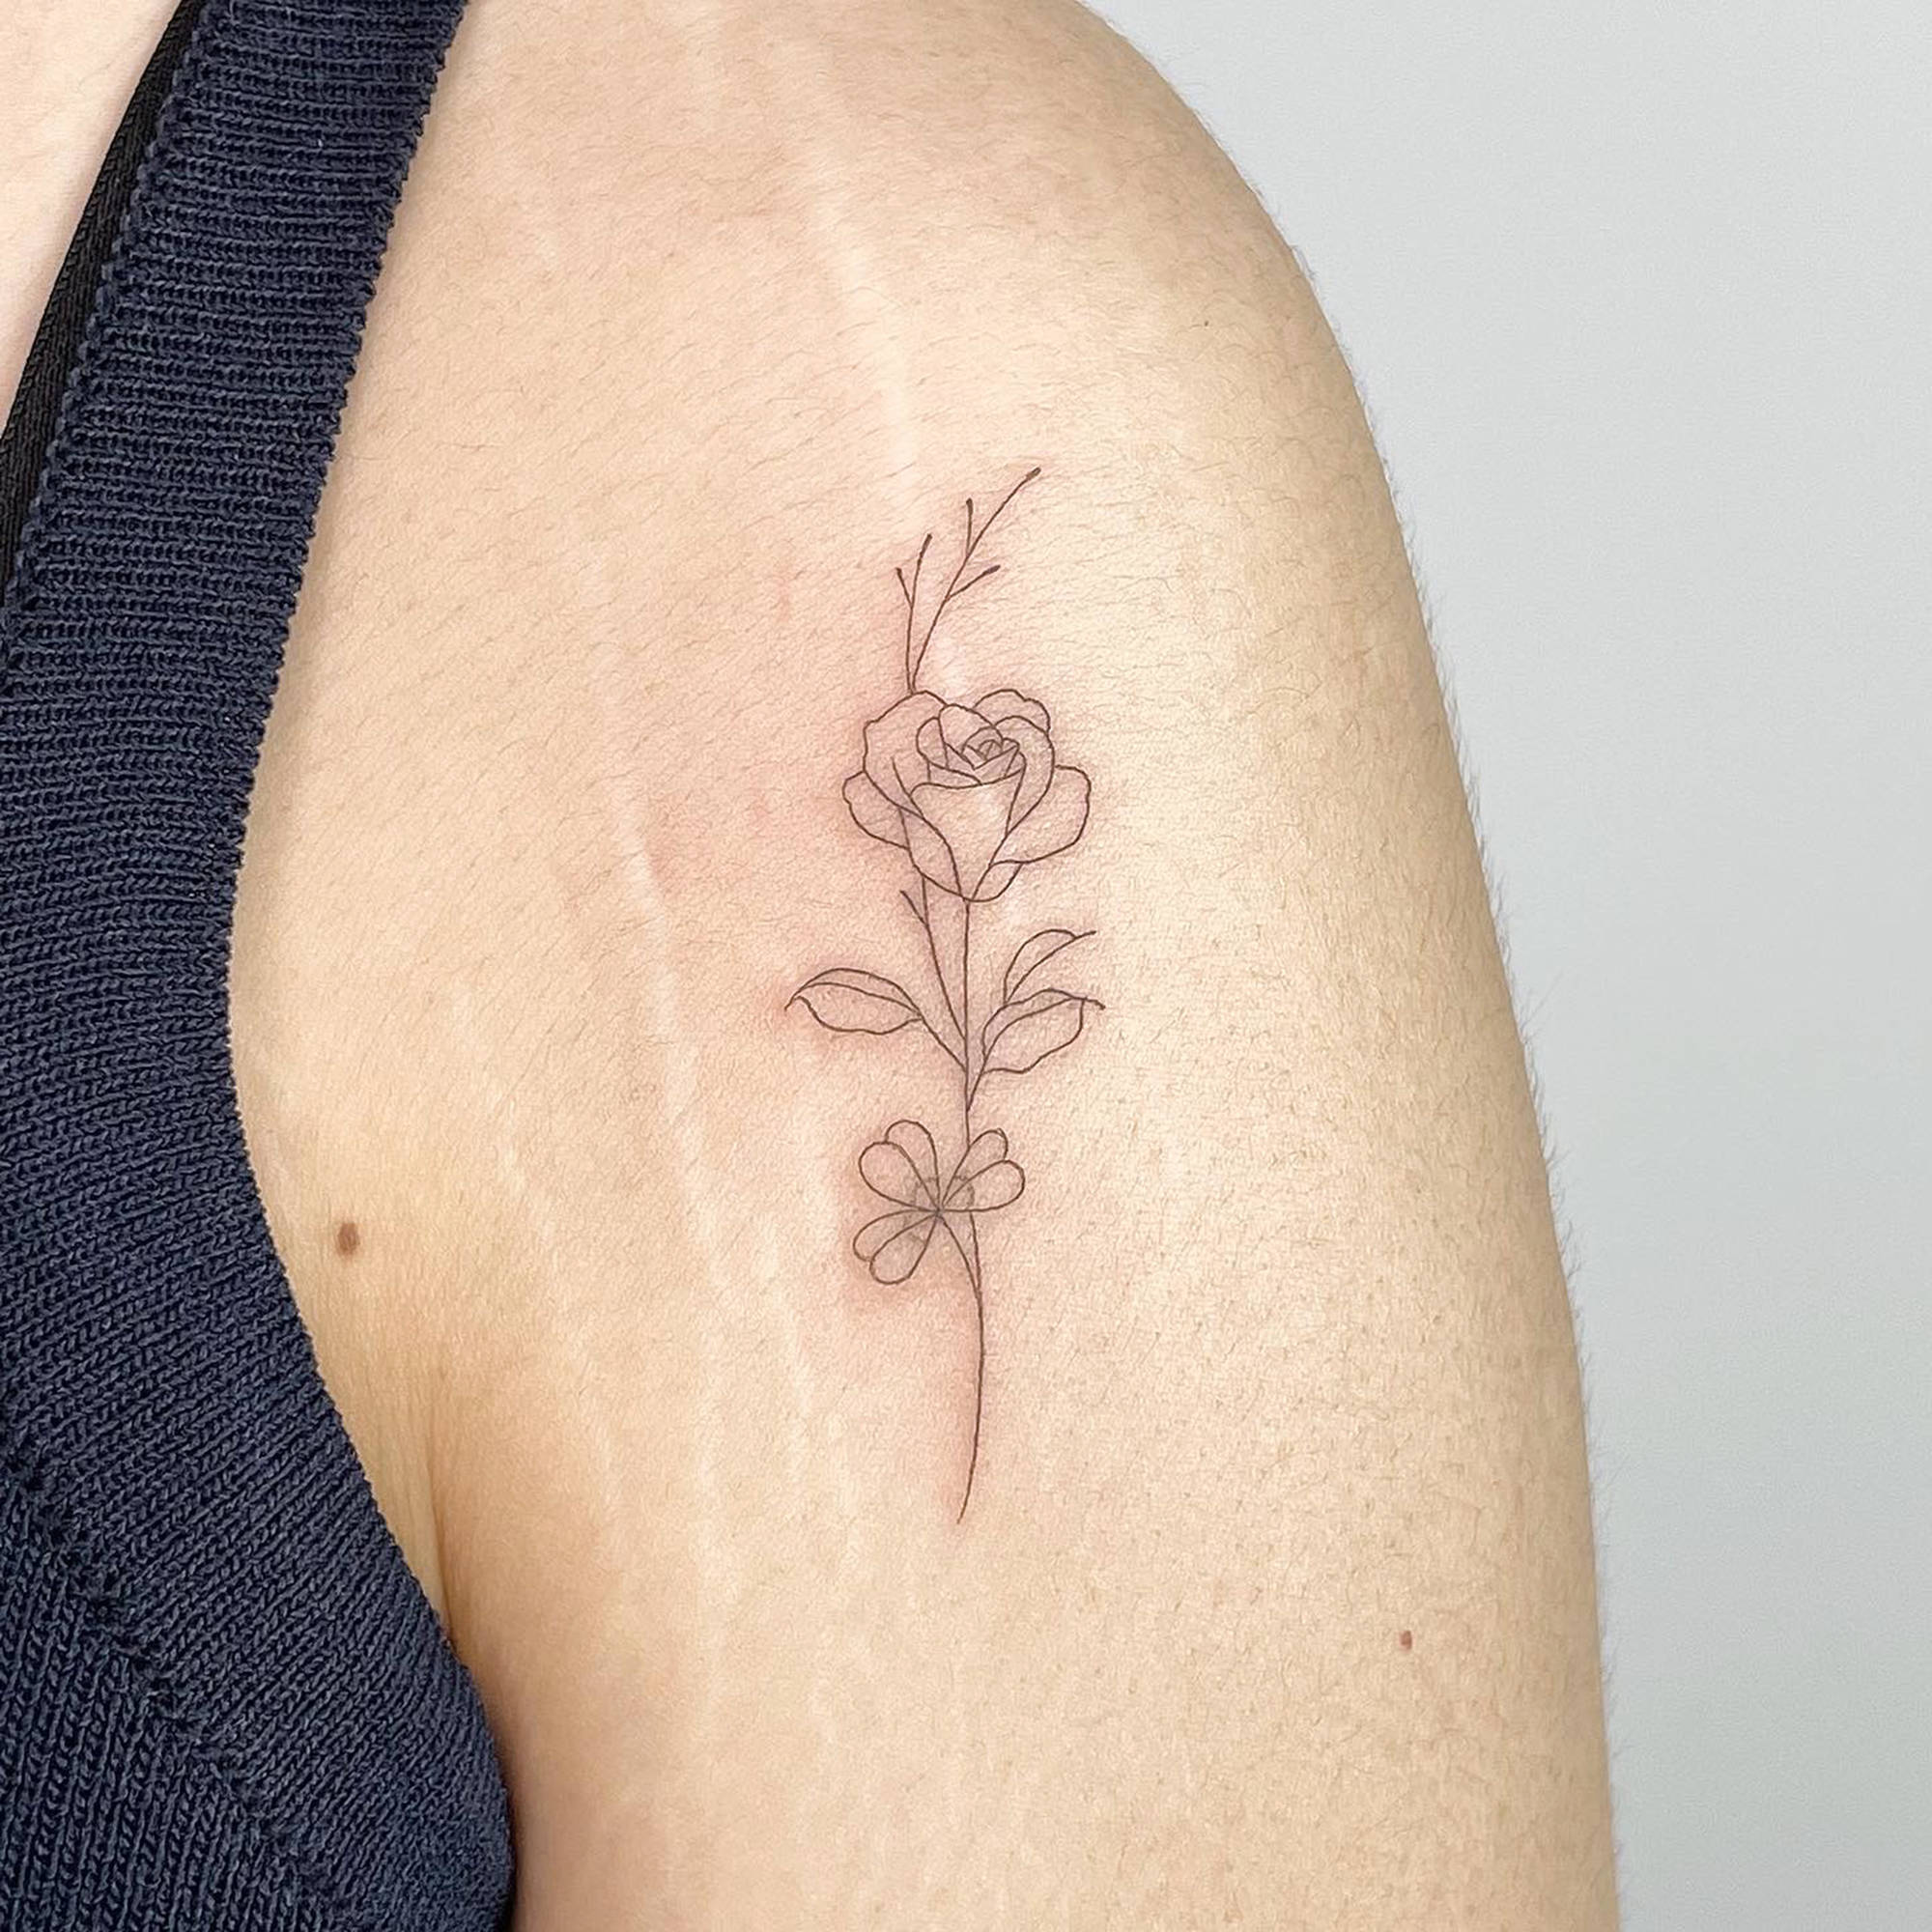  𝑠𝑒𝑜𝑦𝑒𝑜𝑛   Korean tattoos Small geometric tattoo Elegant  tattoos